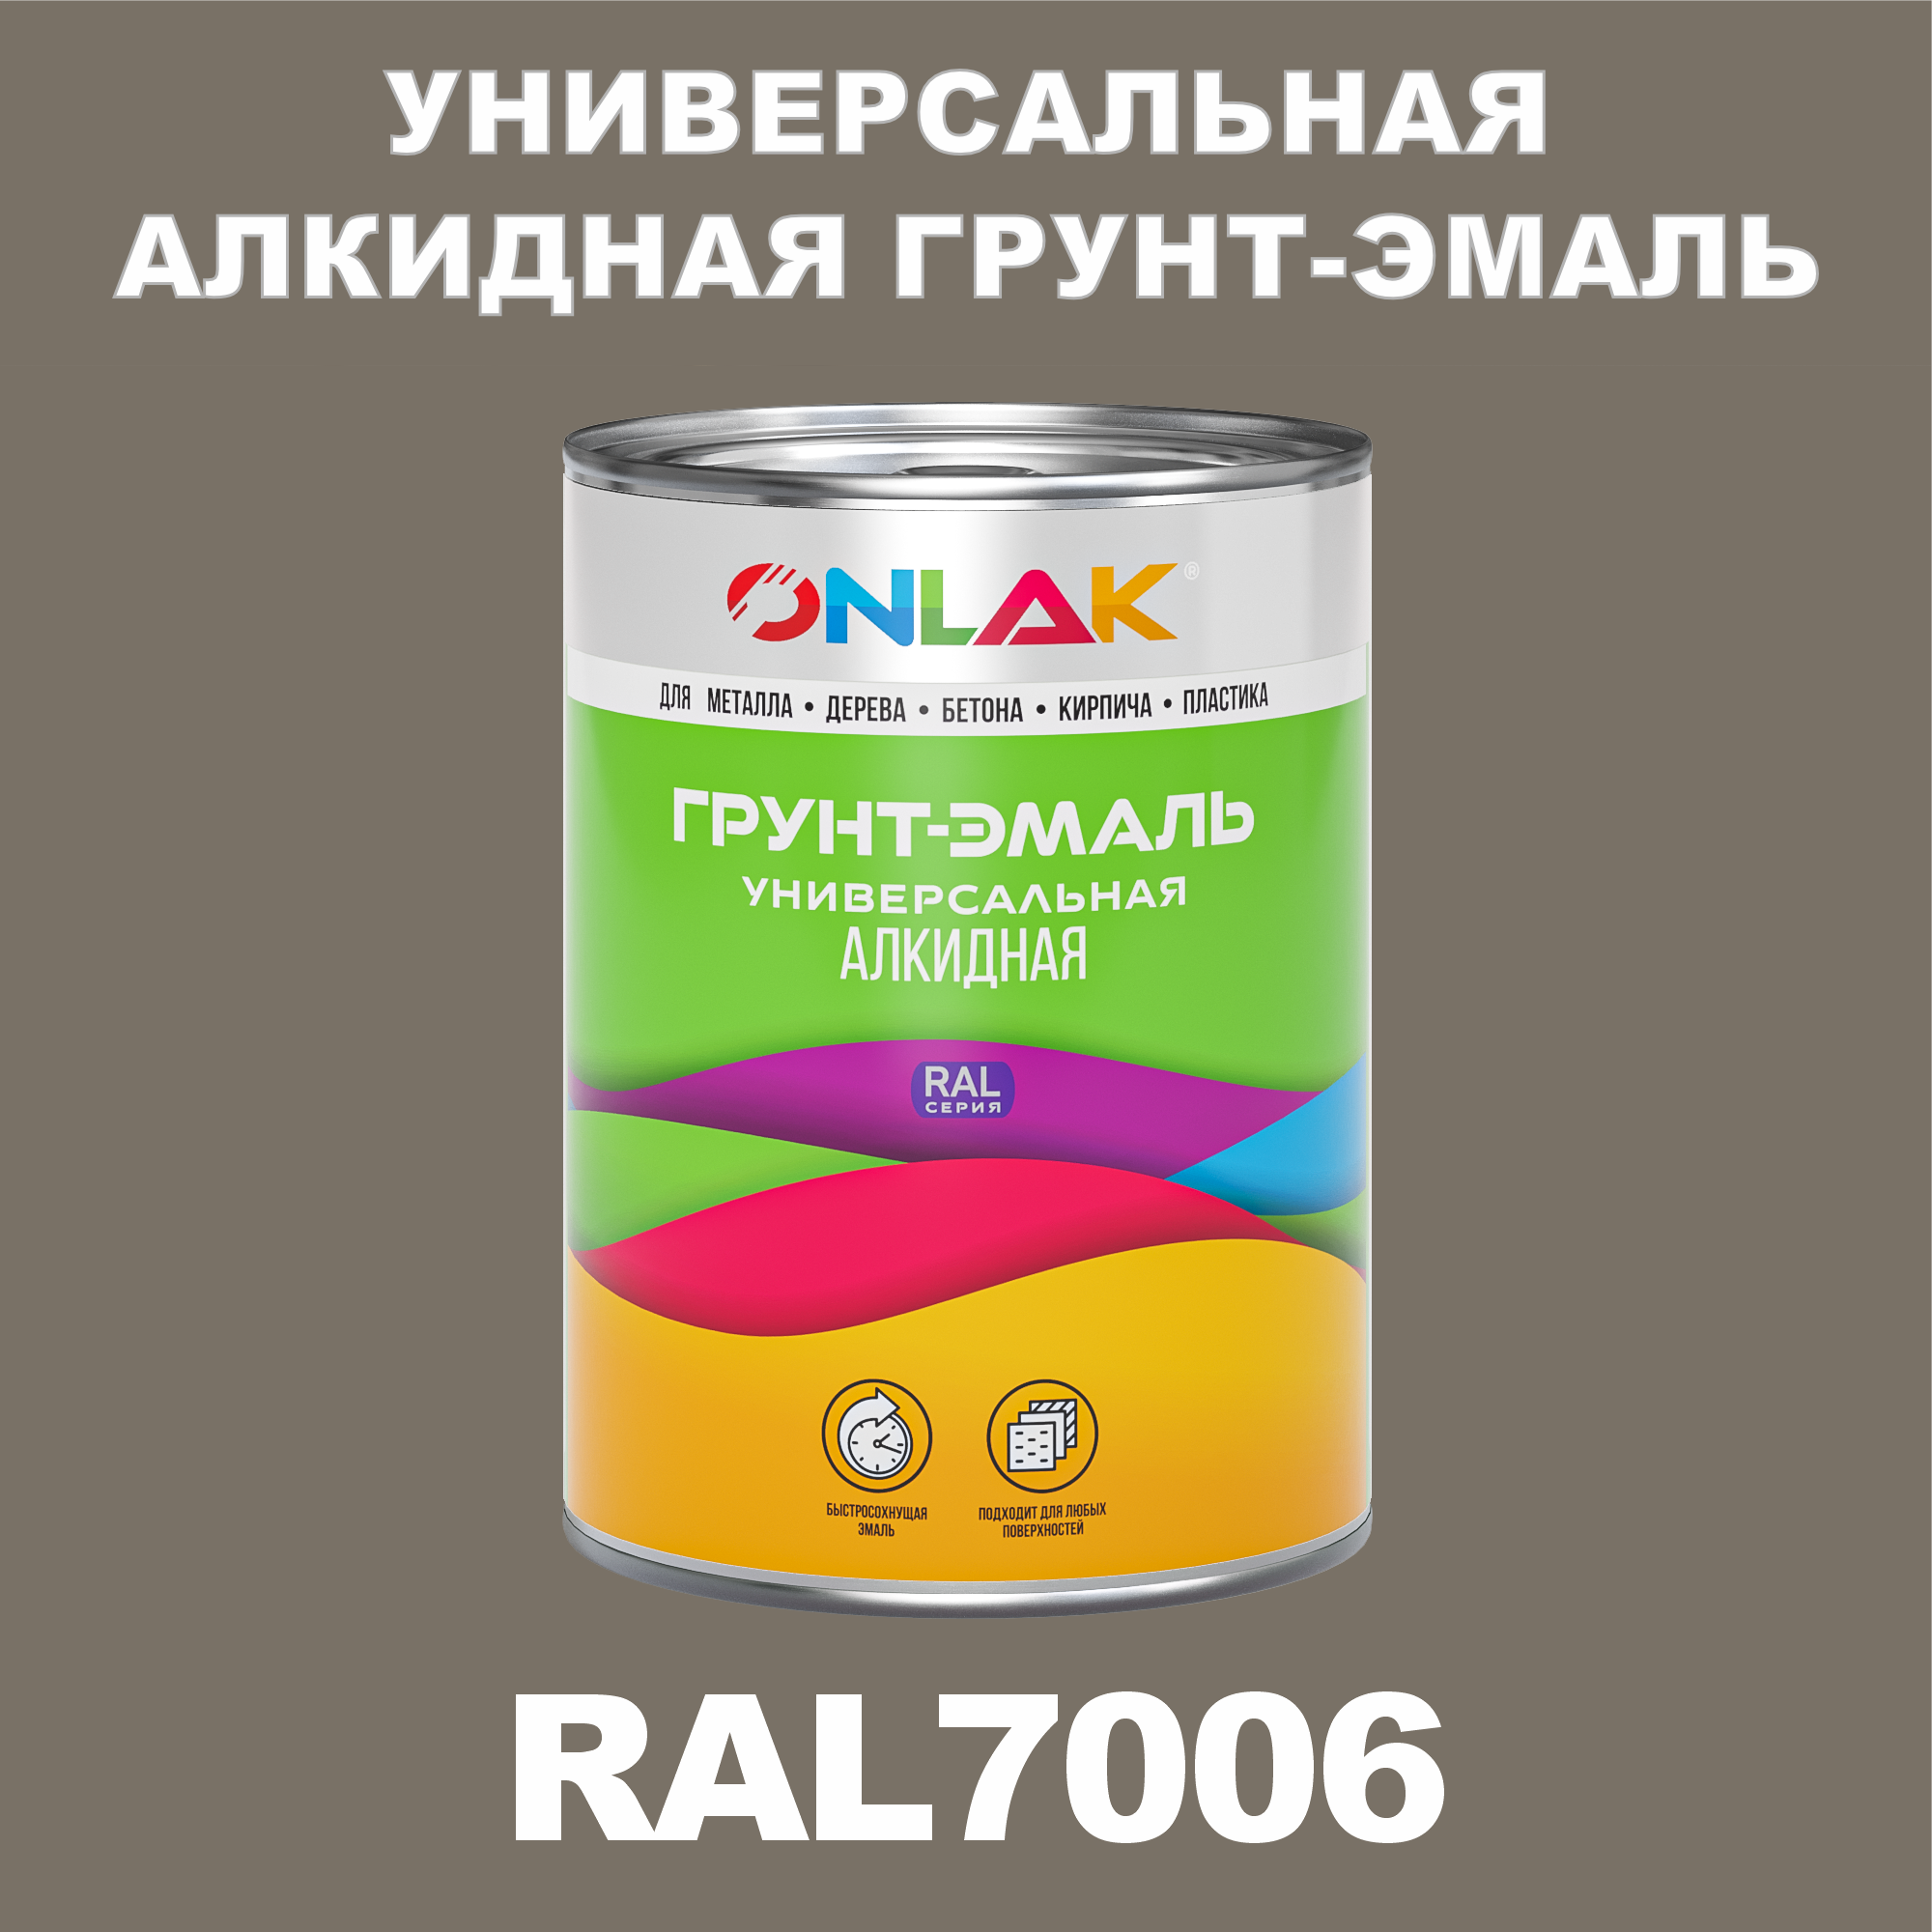 Грунт-эмаль ONLAK 1К RAL7006 антикоррозионная алкидная по металлу по ржавчине 1 кг грунт эмаль yollo по ржавчине алкидная серая 0 9 кг